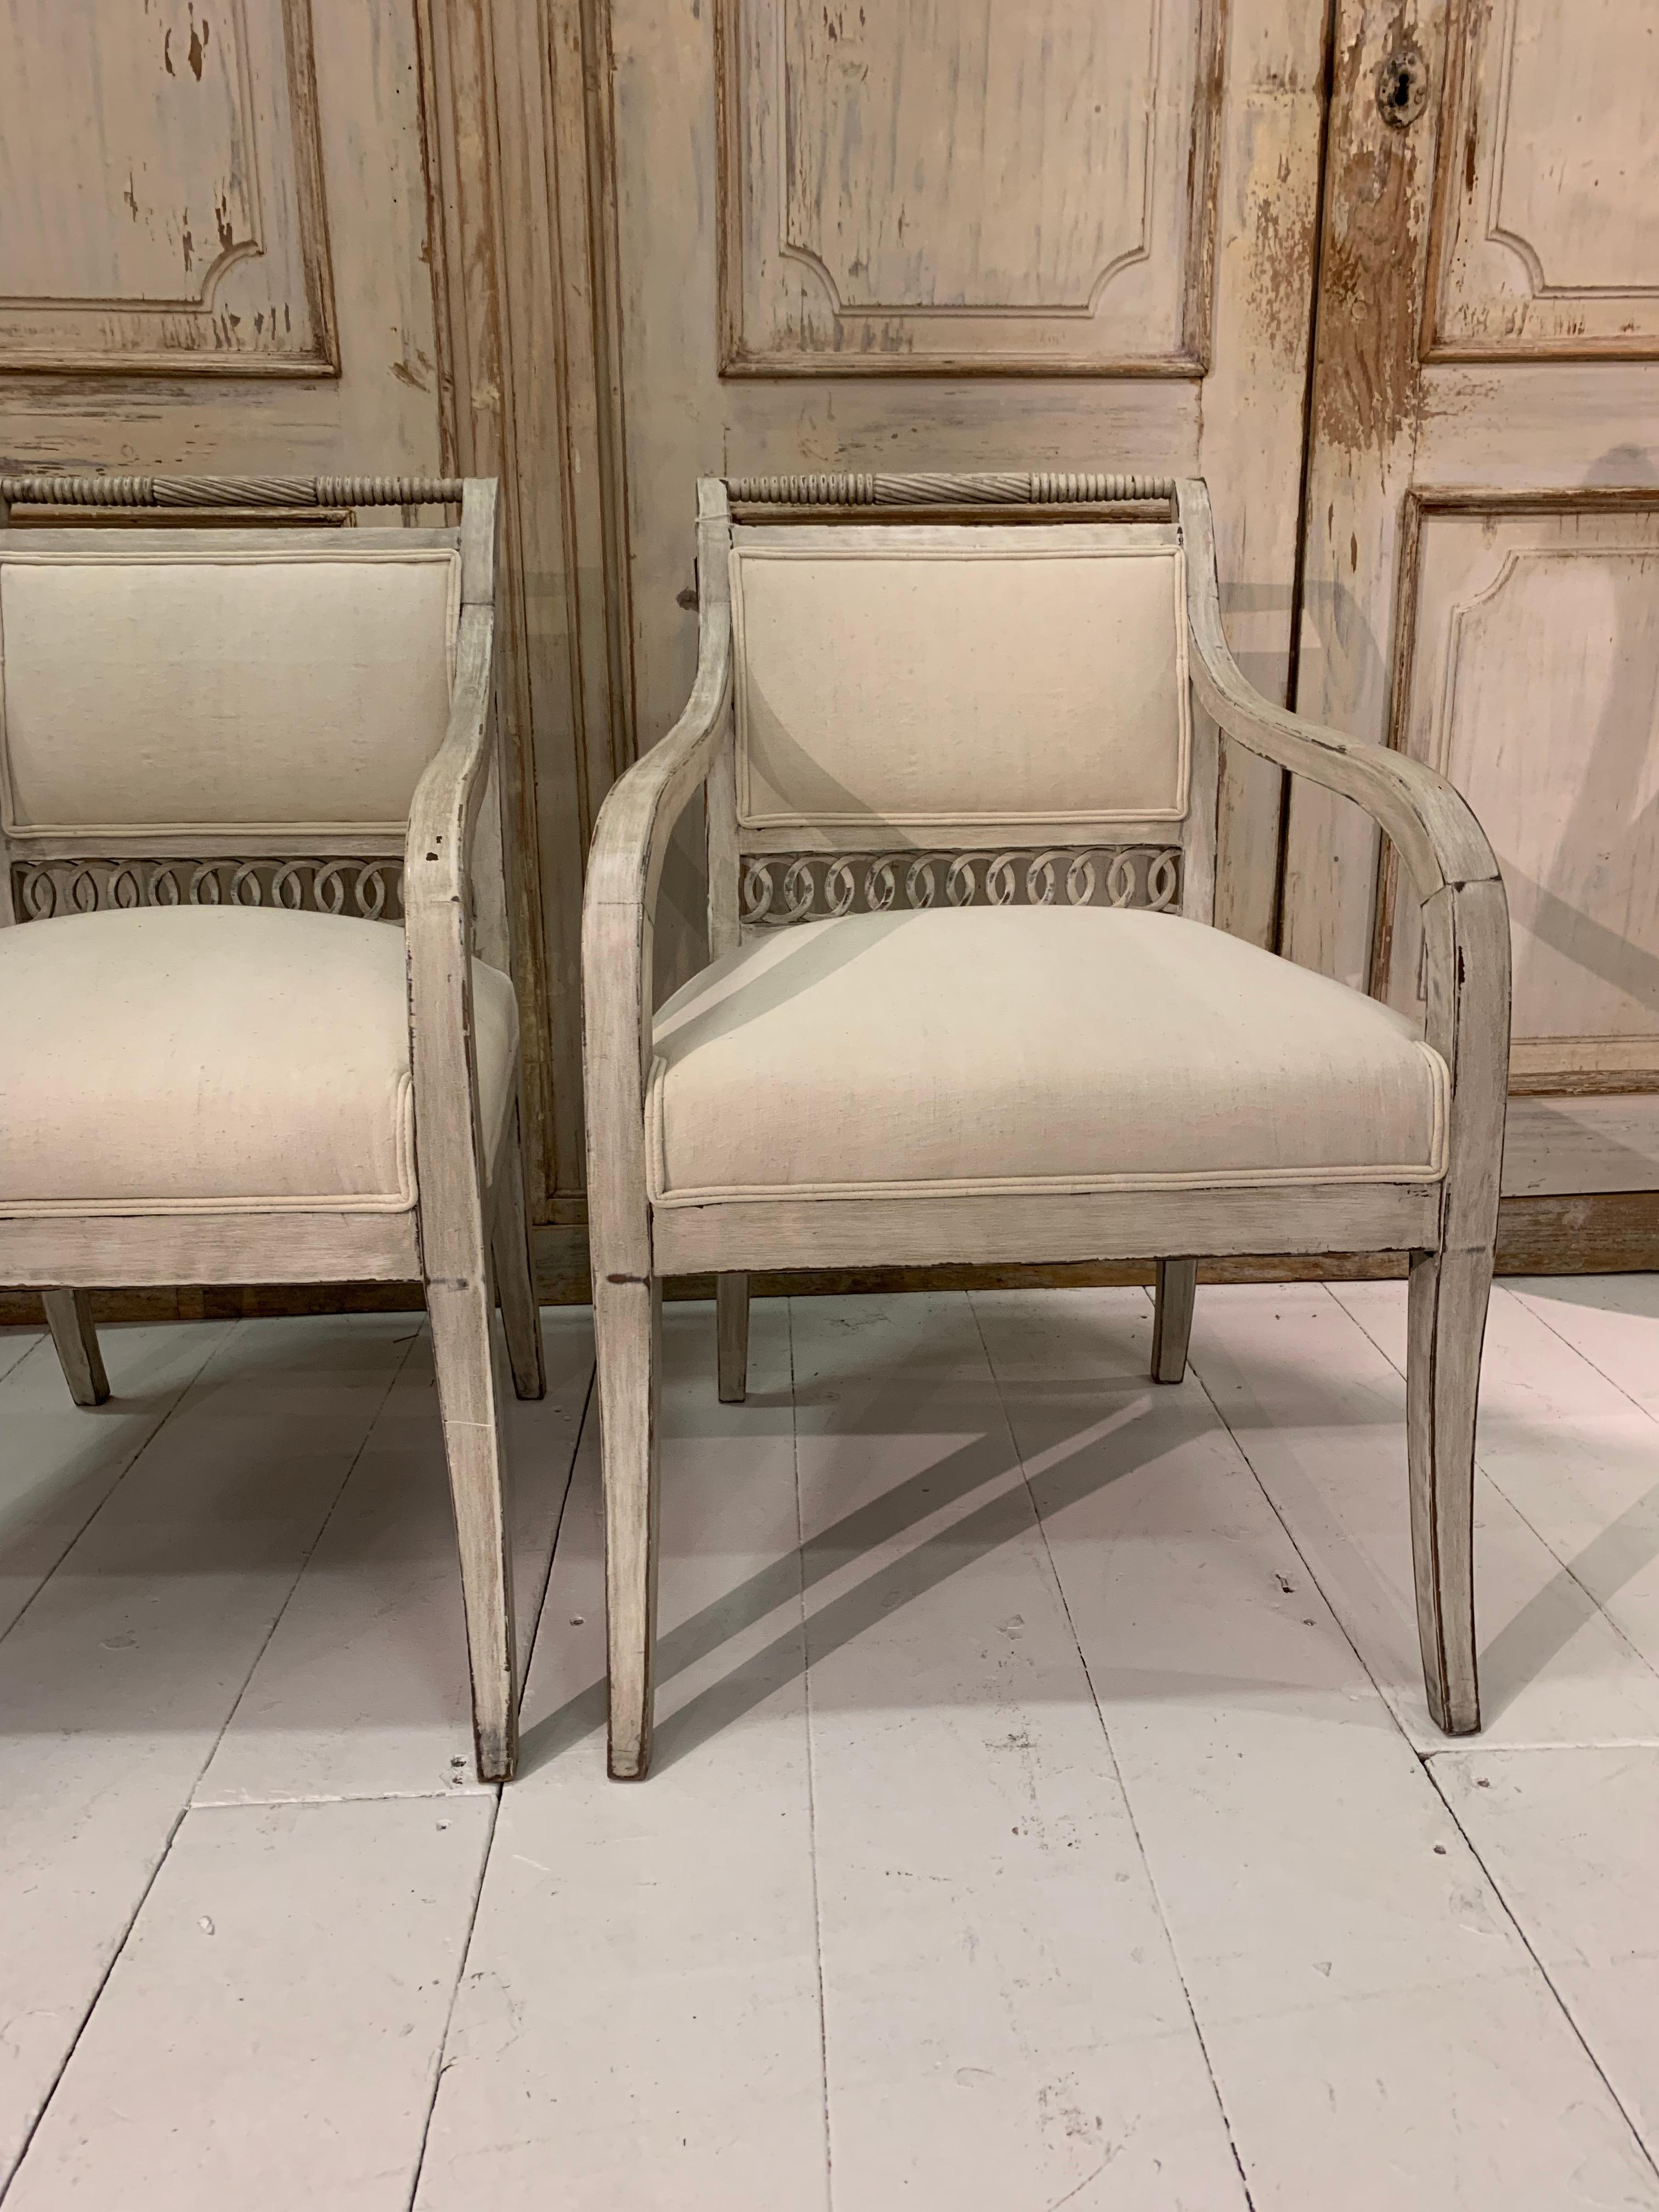 Une paire de charmants fauteuils ouverts suédois de la fin du 19e siècle, tapissés et peints, avec une bordure décorative en fretwork et des brancards tournés à leur dos.
Récemment retapissé dans un lin français vintage clair.

Parfait pour une